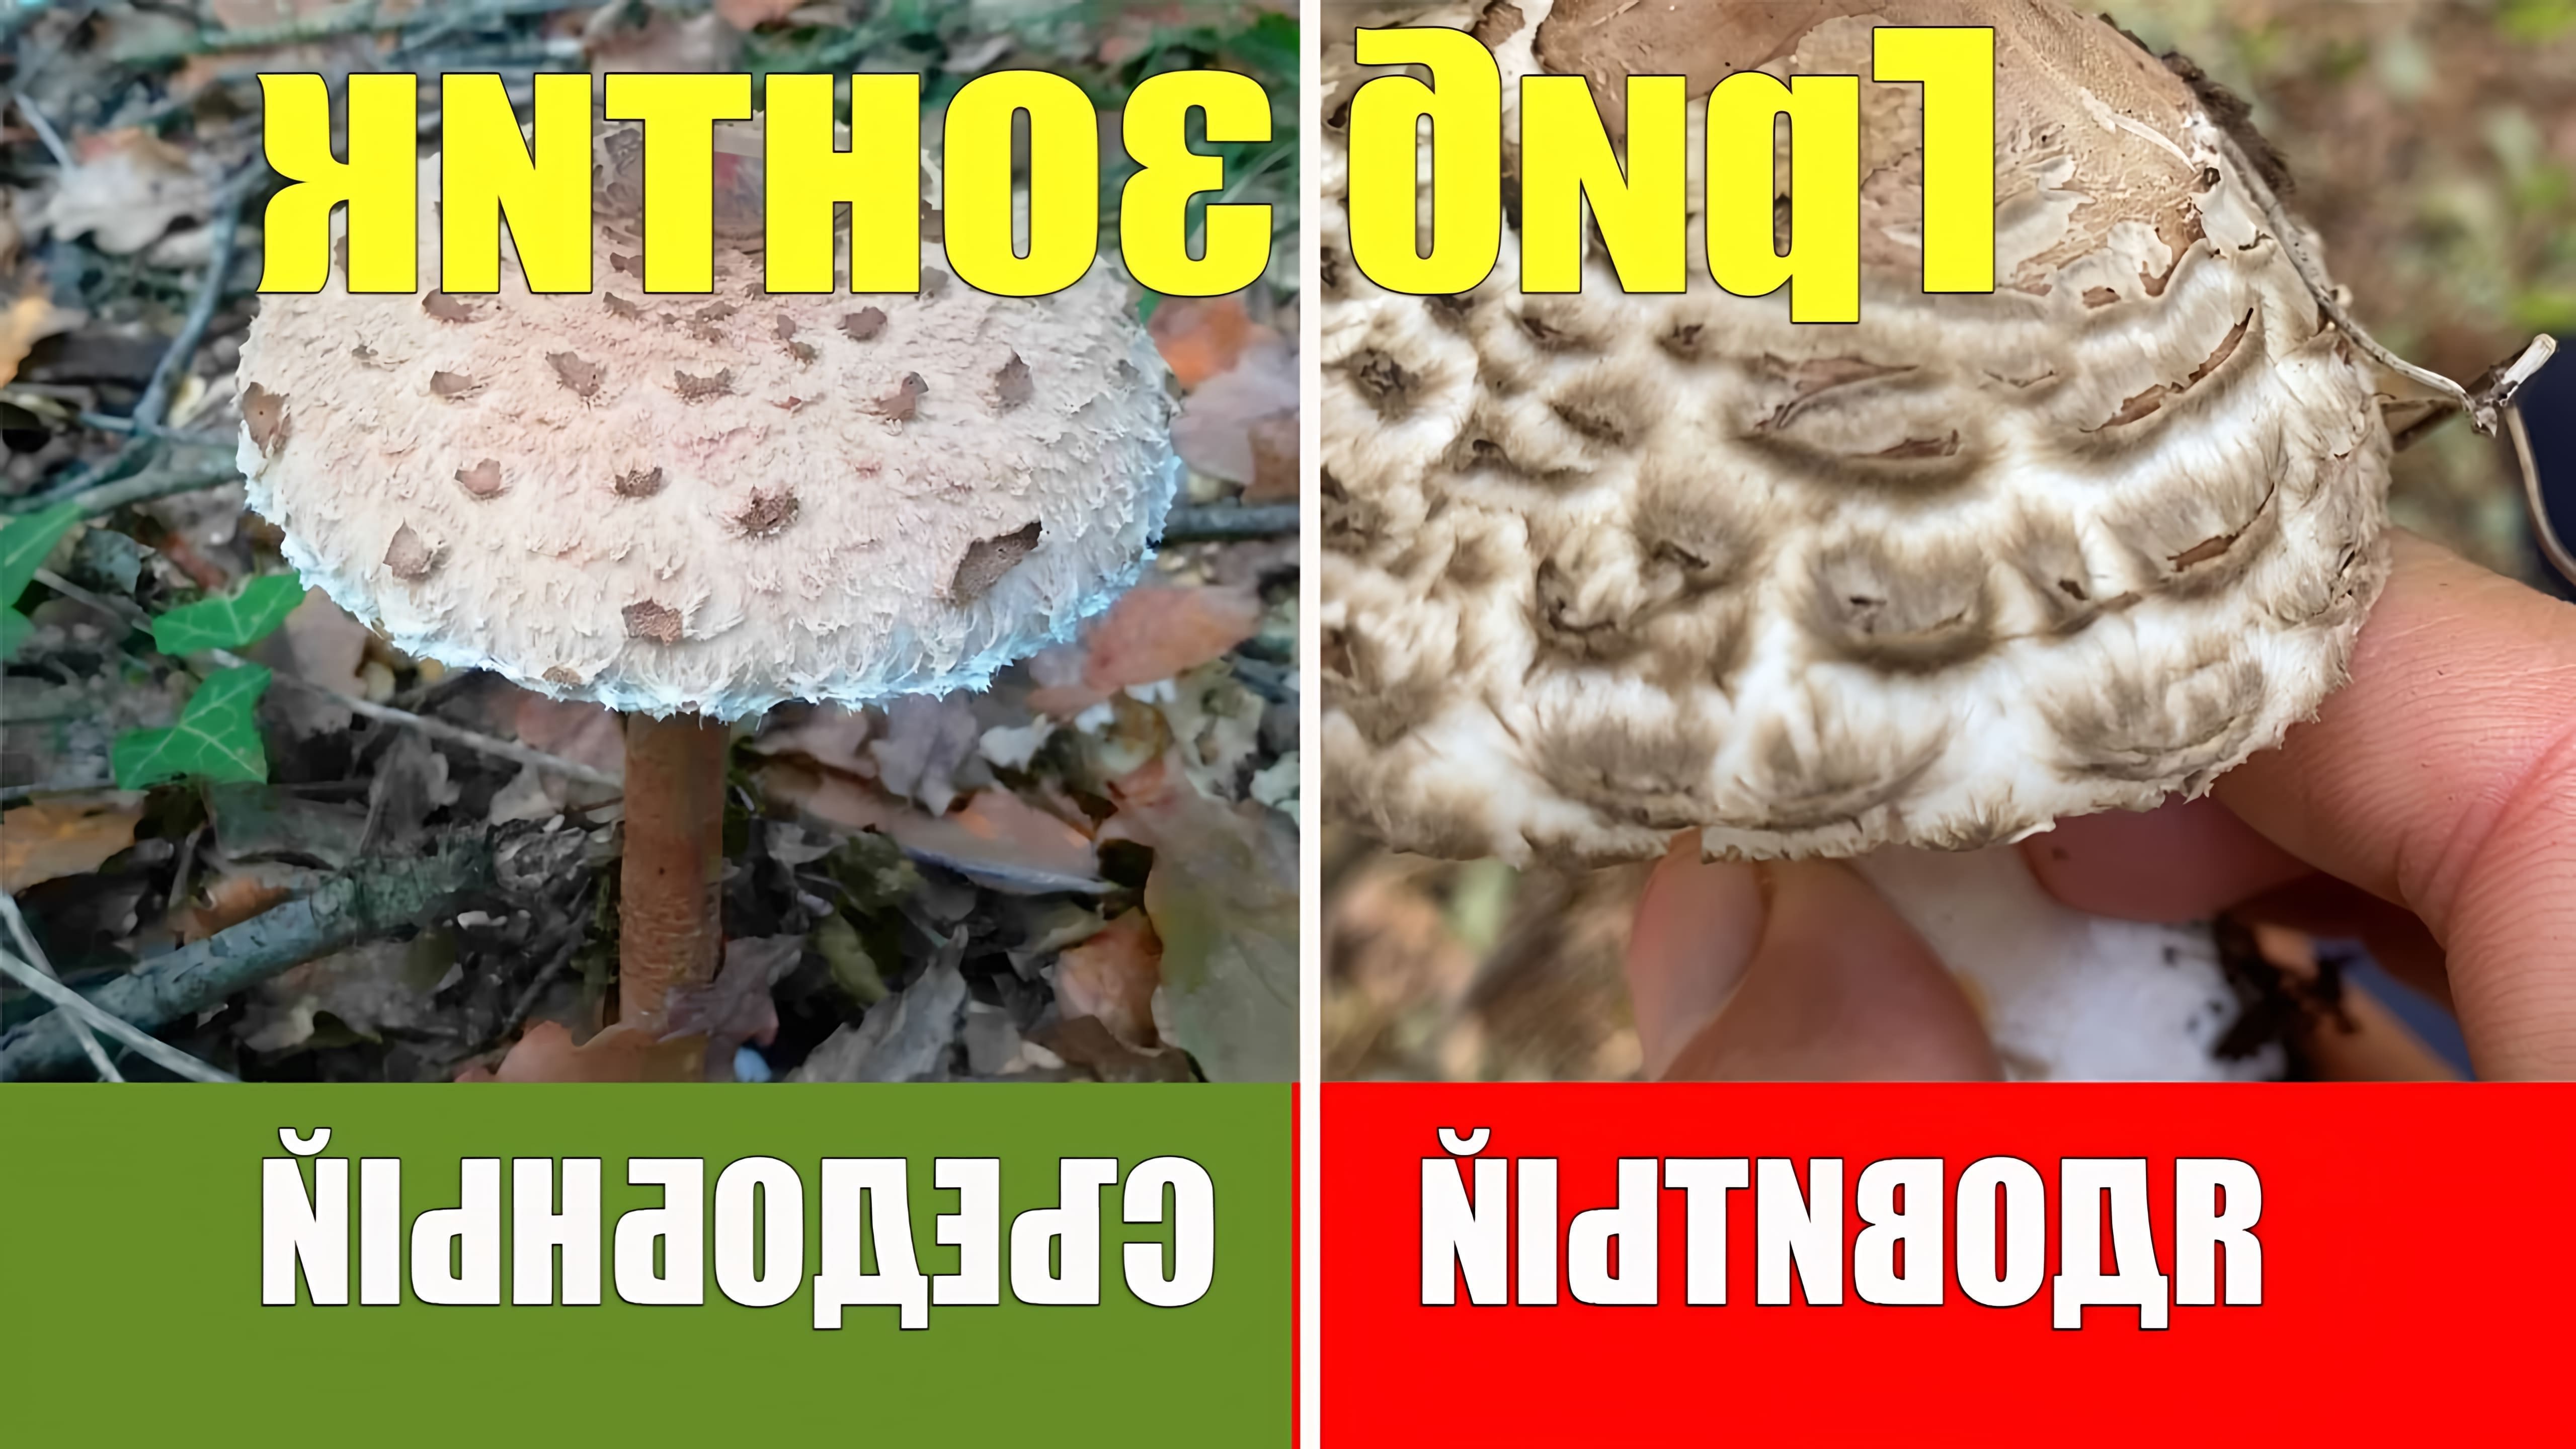 Съедобный гриб, называемый зонтиковым грибом, имеет форму зонта с тонким стеблем по сравнению с размером шляпки